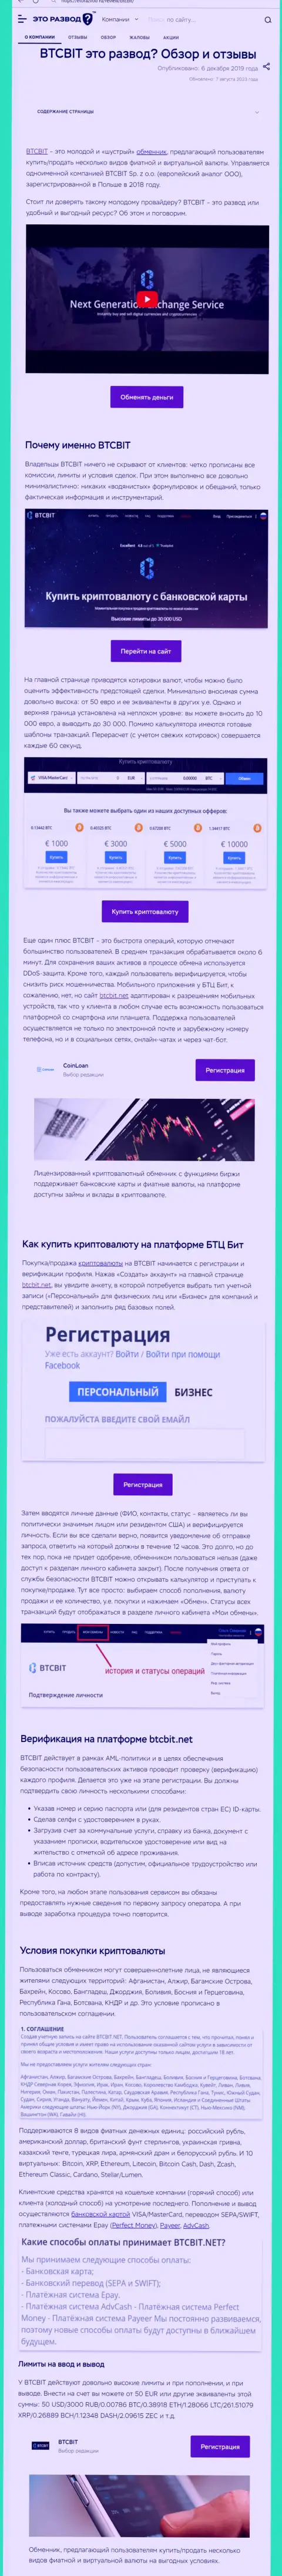 Материал с информационным обзором обменки БТЦ Бит на онлайн-ресурсе etorazvod ru